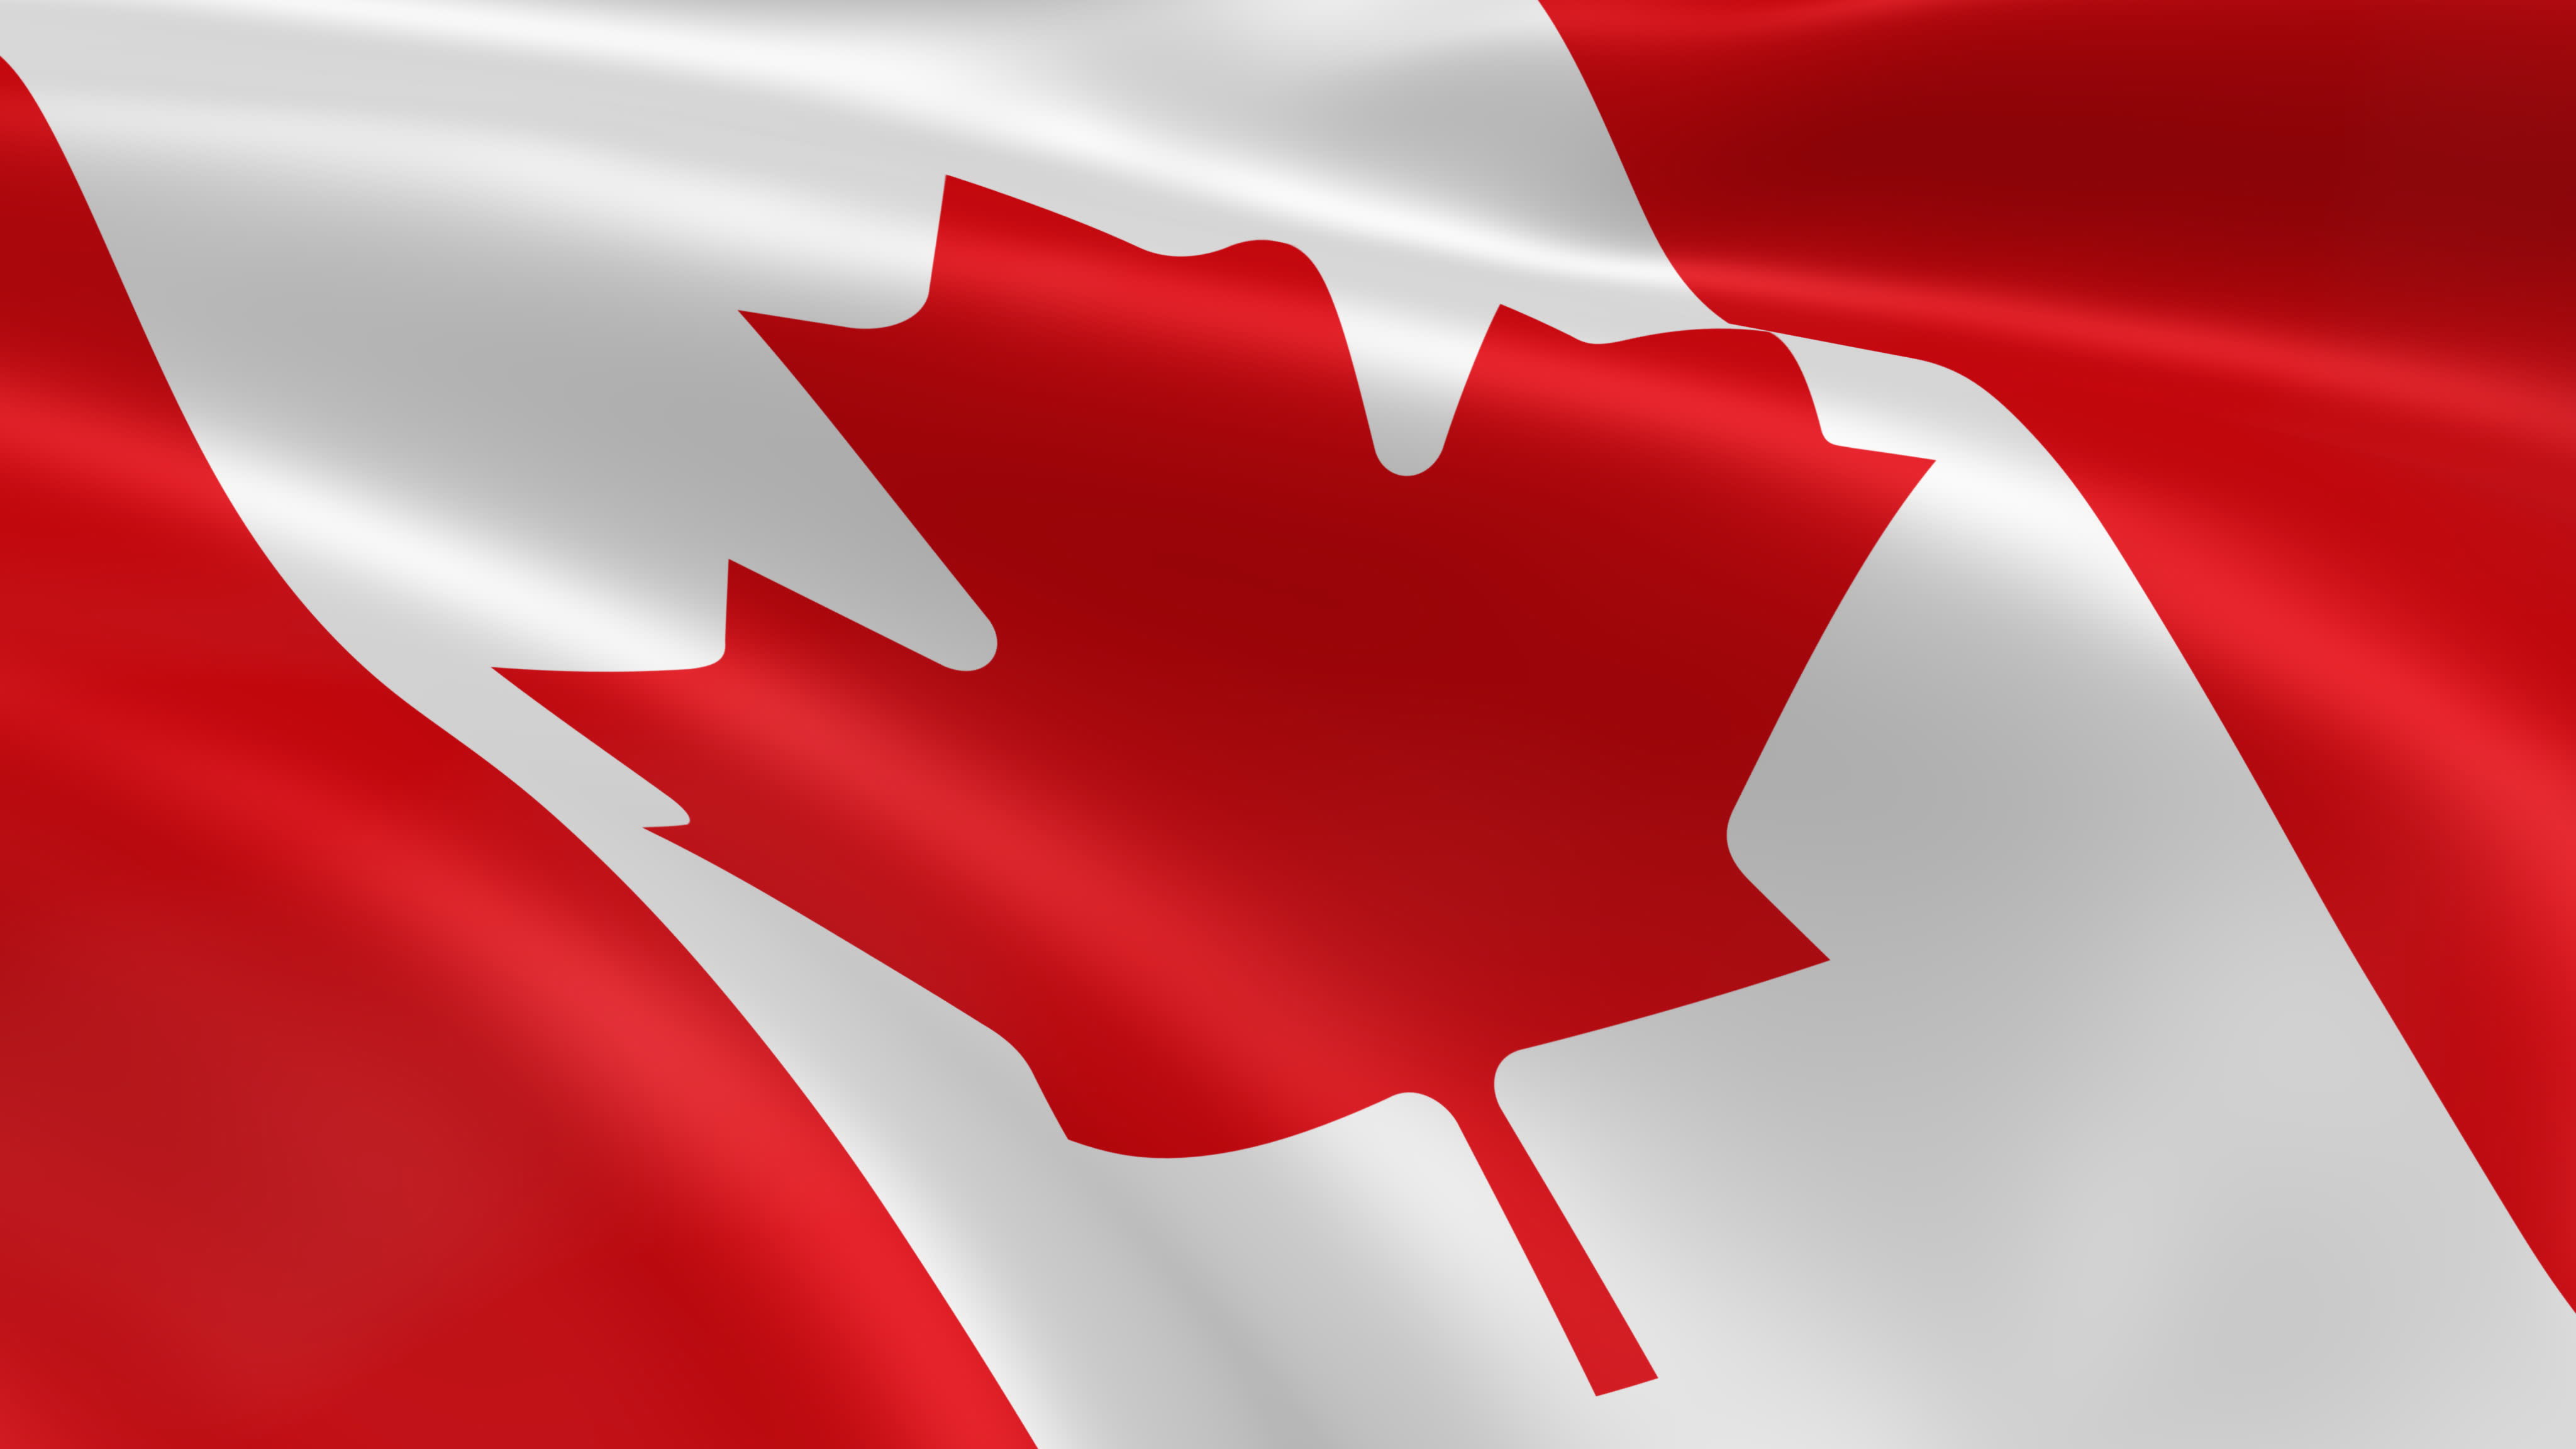 カナダの旗の壁紙,赤,カエデの葉,国旗,木,カーマイン